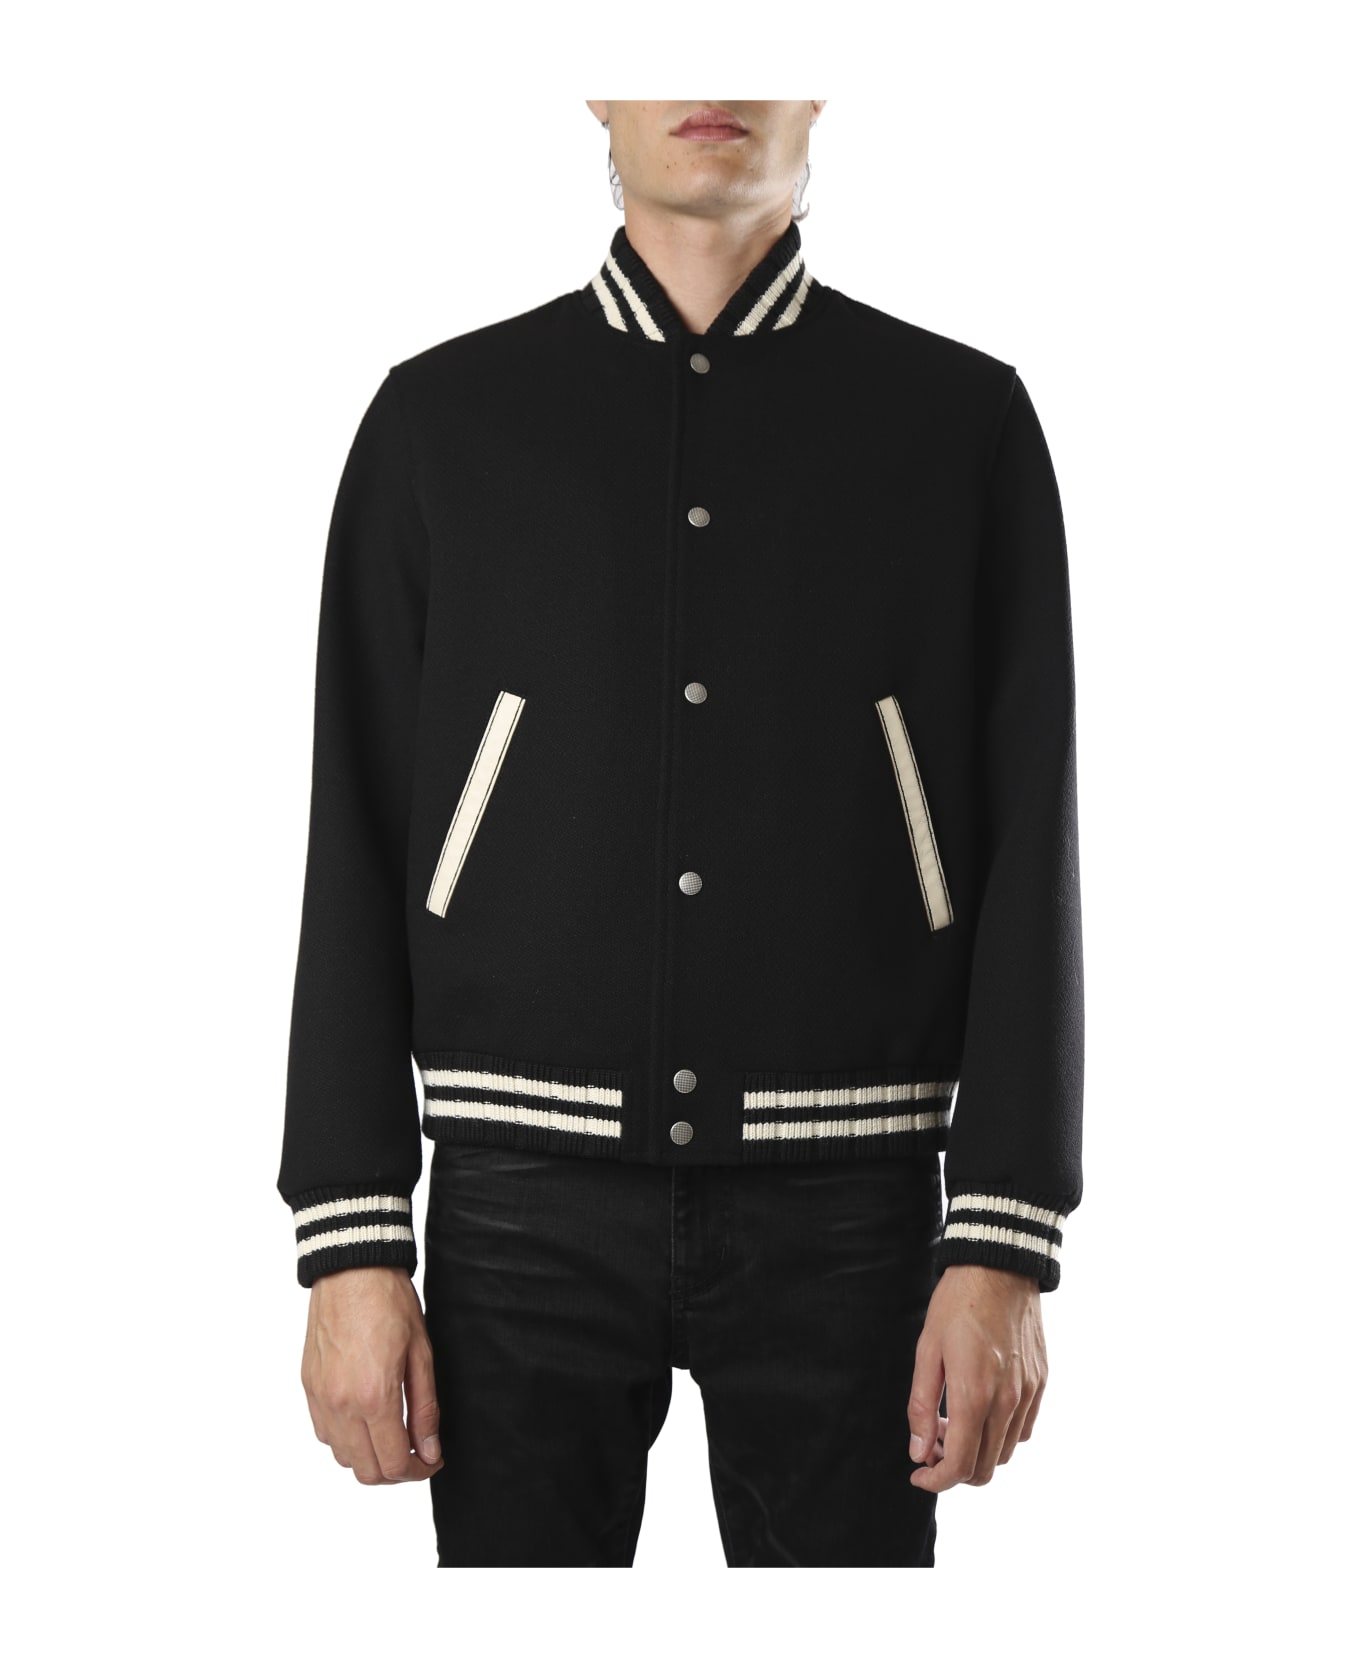 Saint Laurent Teddy Jacket In Wool - BLACK